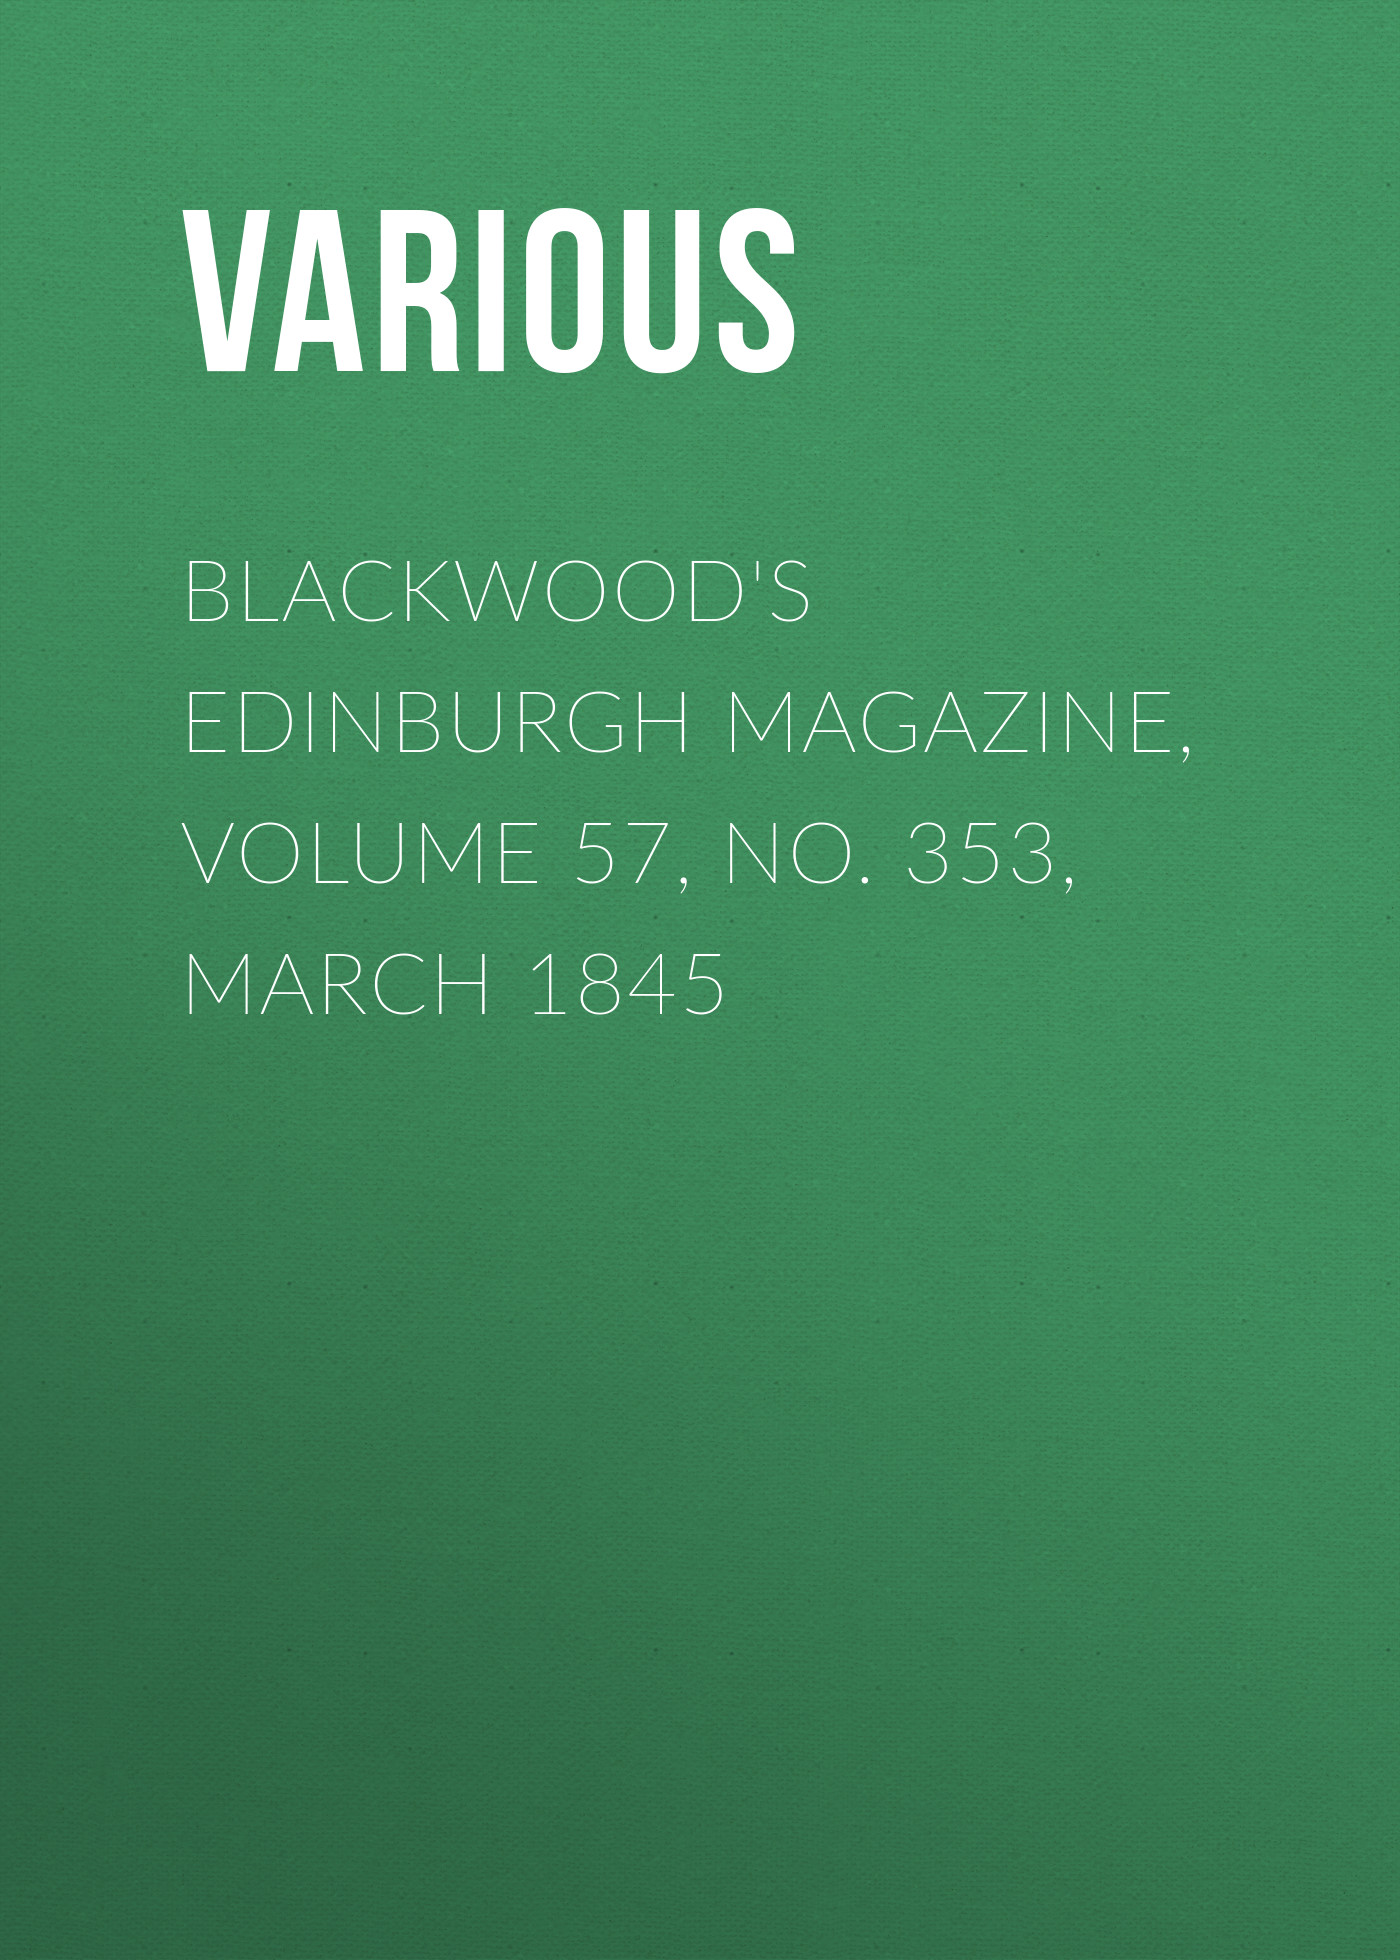 Книга Blackwood's Edinburgh Magazine, Volume 57, No. 353, March 1845 из серии , созданная  Various, может относится к жанру Журналы, Зарубежная образовательная литература, Книги о Путешествиях. Стоимость электронной книги Blackwood's Edinburgh Magazine, Volume 57, No. 353, March 1845 с идентификатором 25570919 составляет 0 руб.